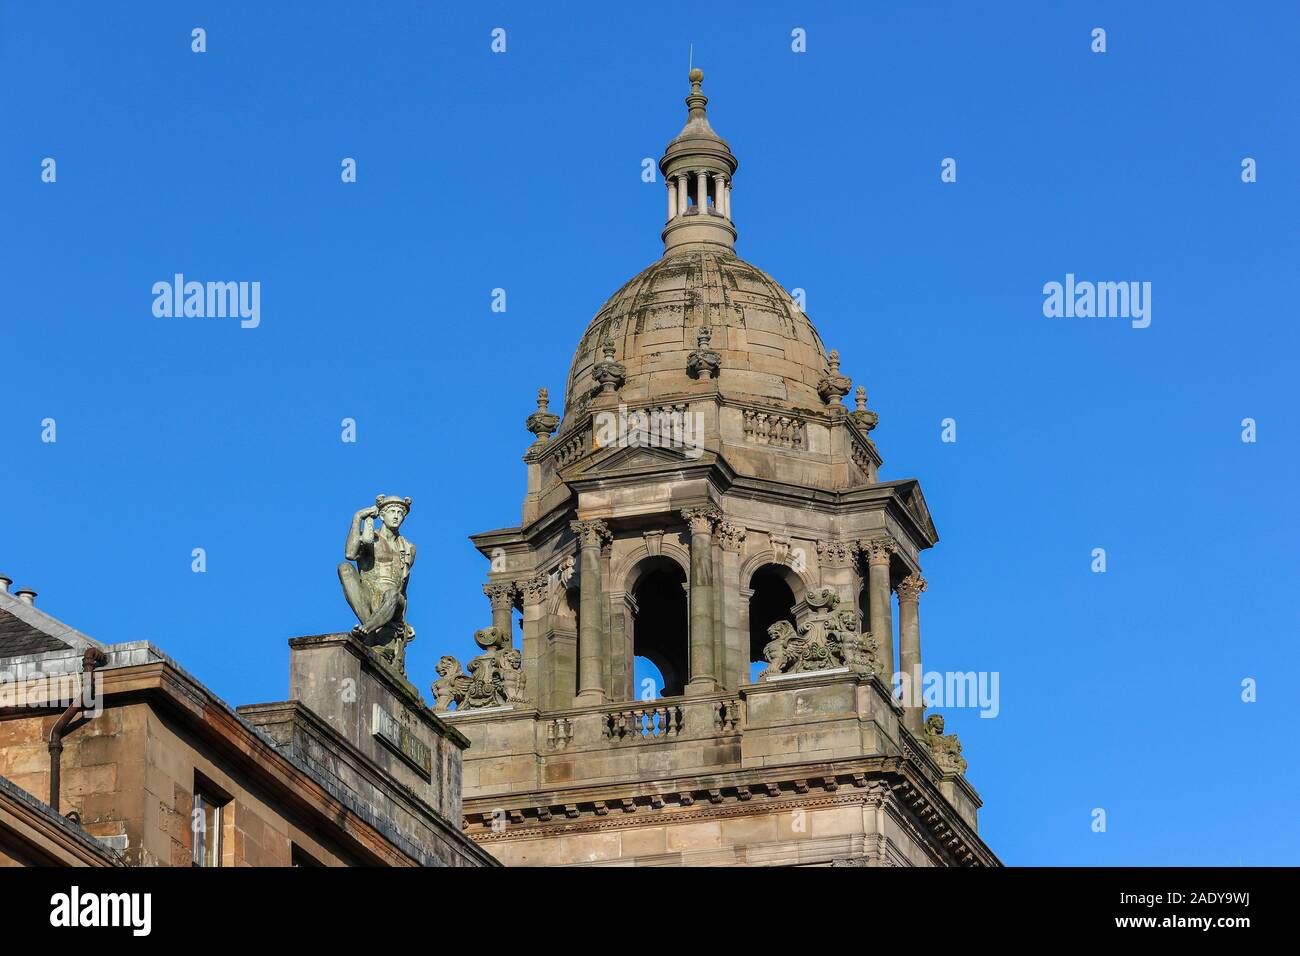 Dettagli architettonici su la Capella Della City Chambers e George Square, Glasgow con la statua di Mercurio, il dio italiano su un tetto nelle vicinanze Foto Stock